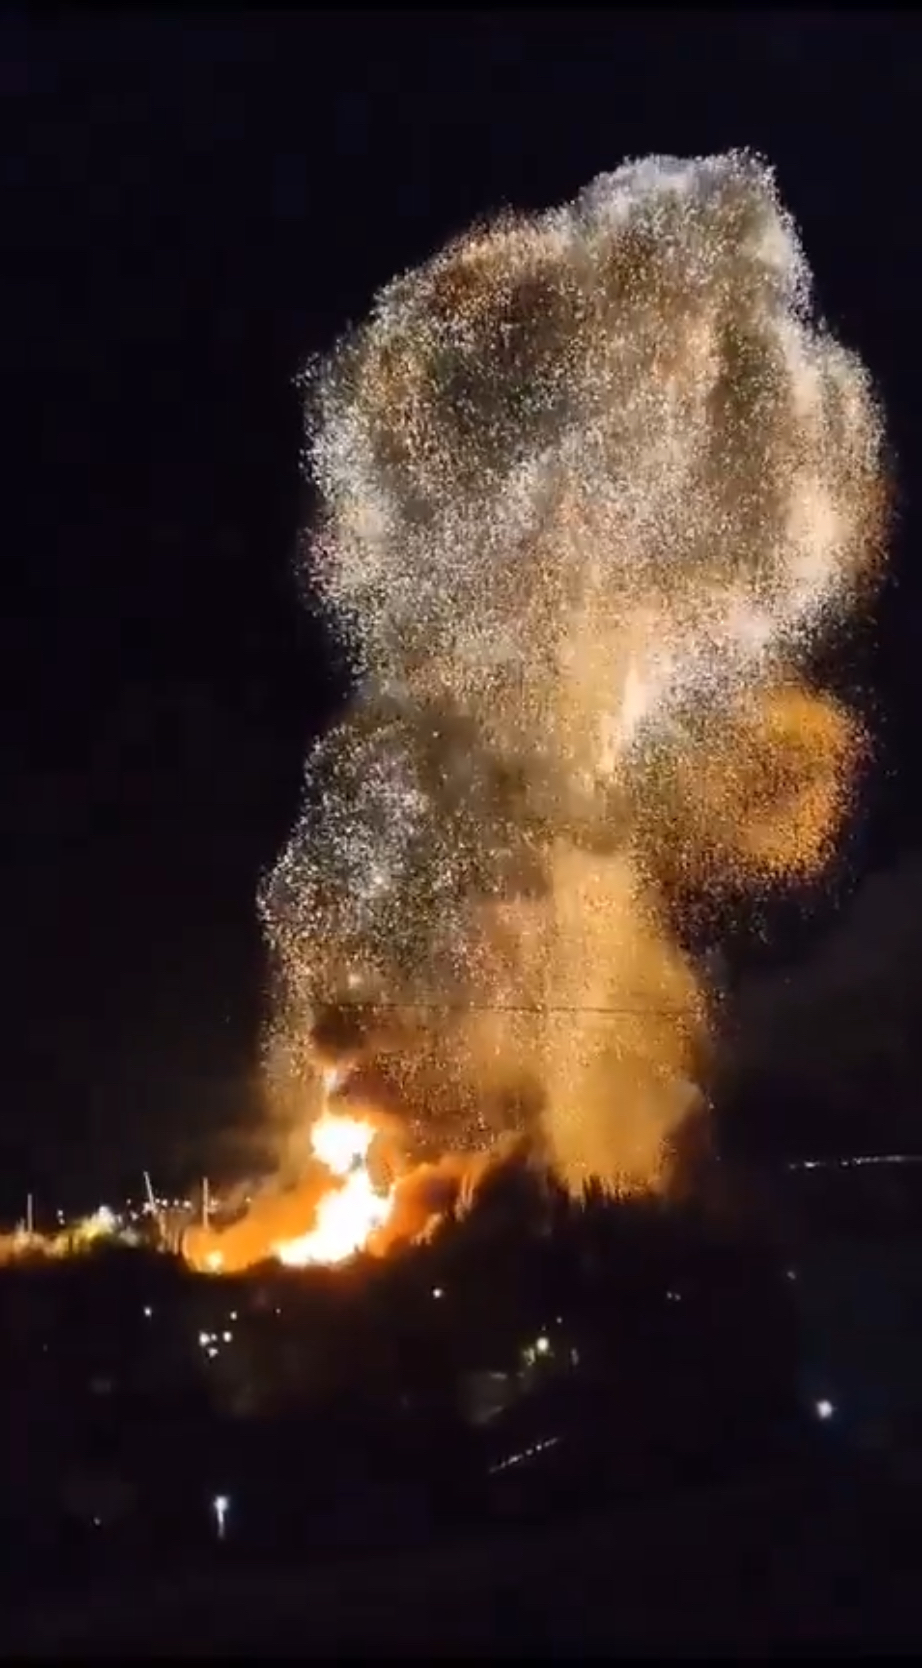 网传影片显示“新切尔卡斯克号” （Novocherkassk）爆炸的一刻。X